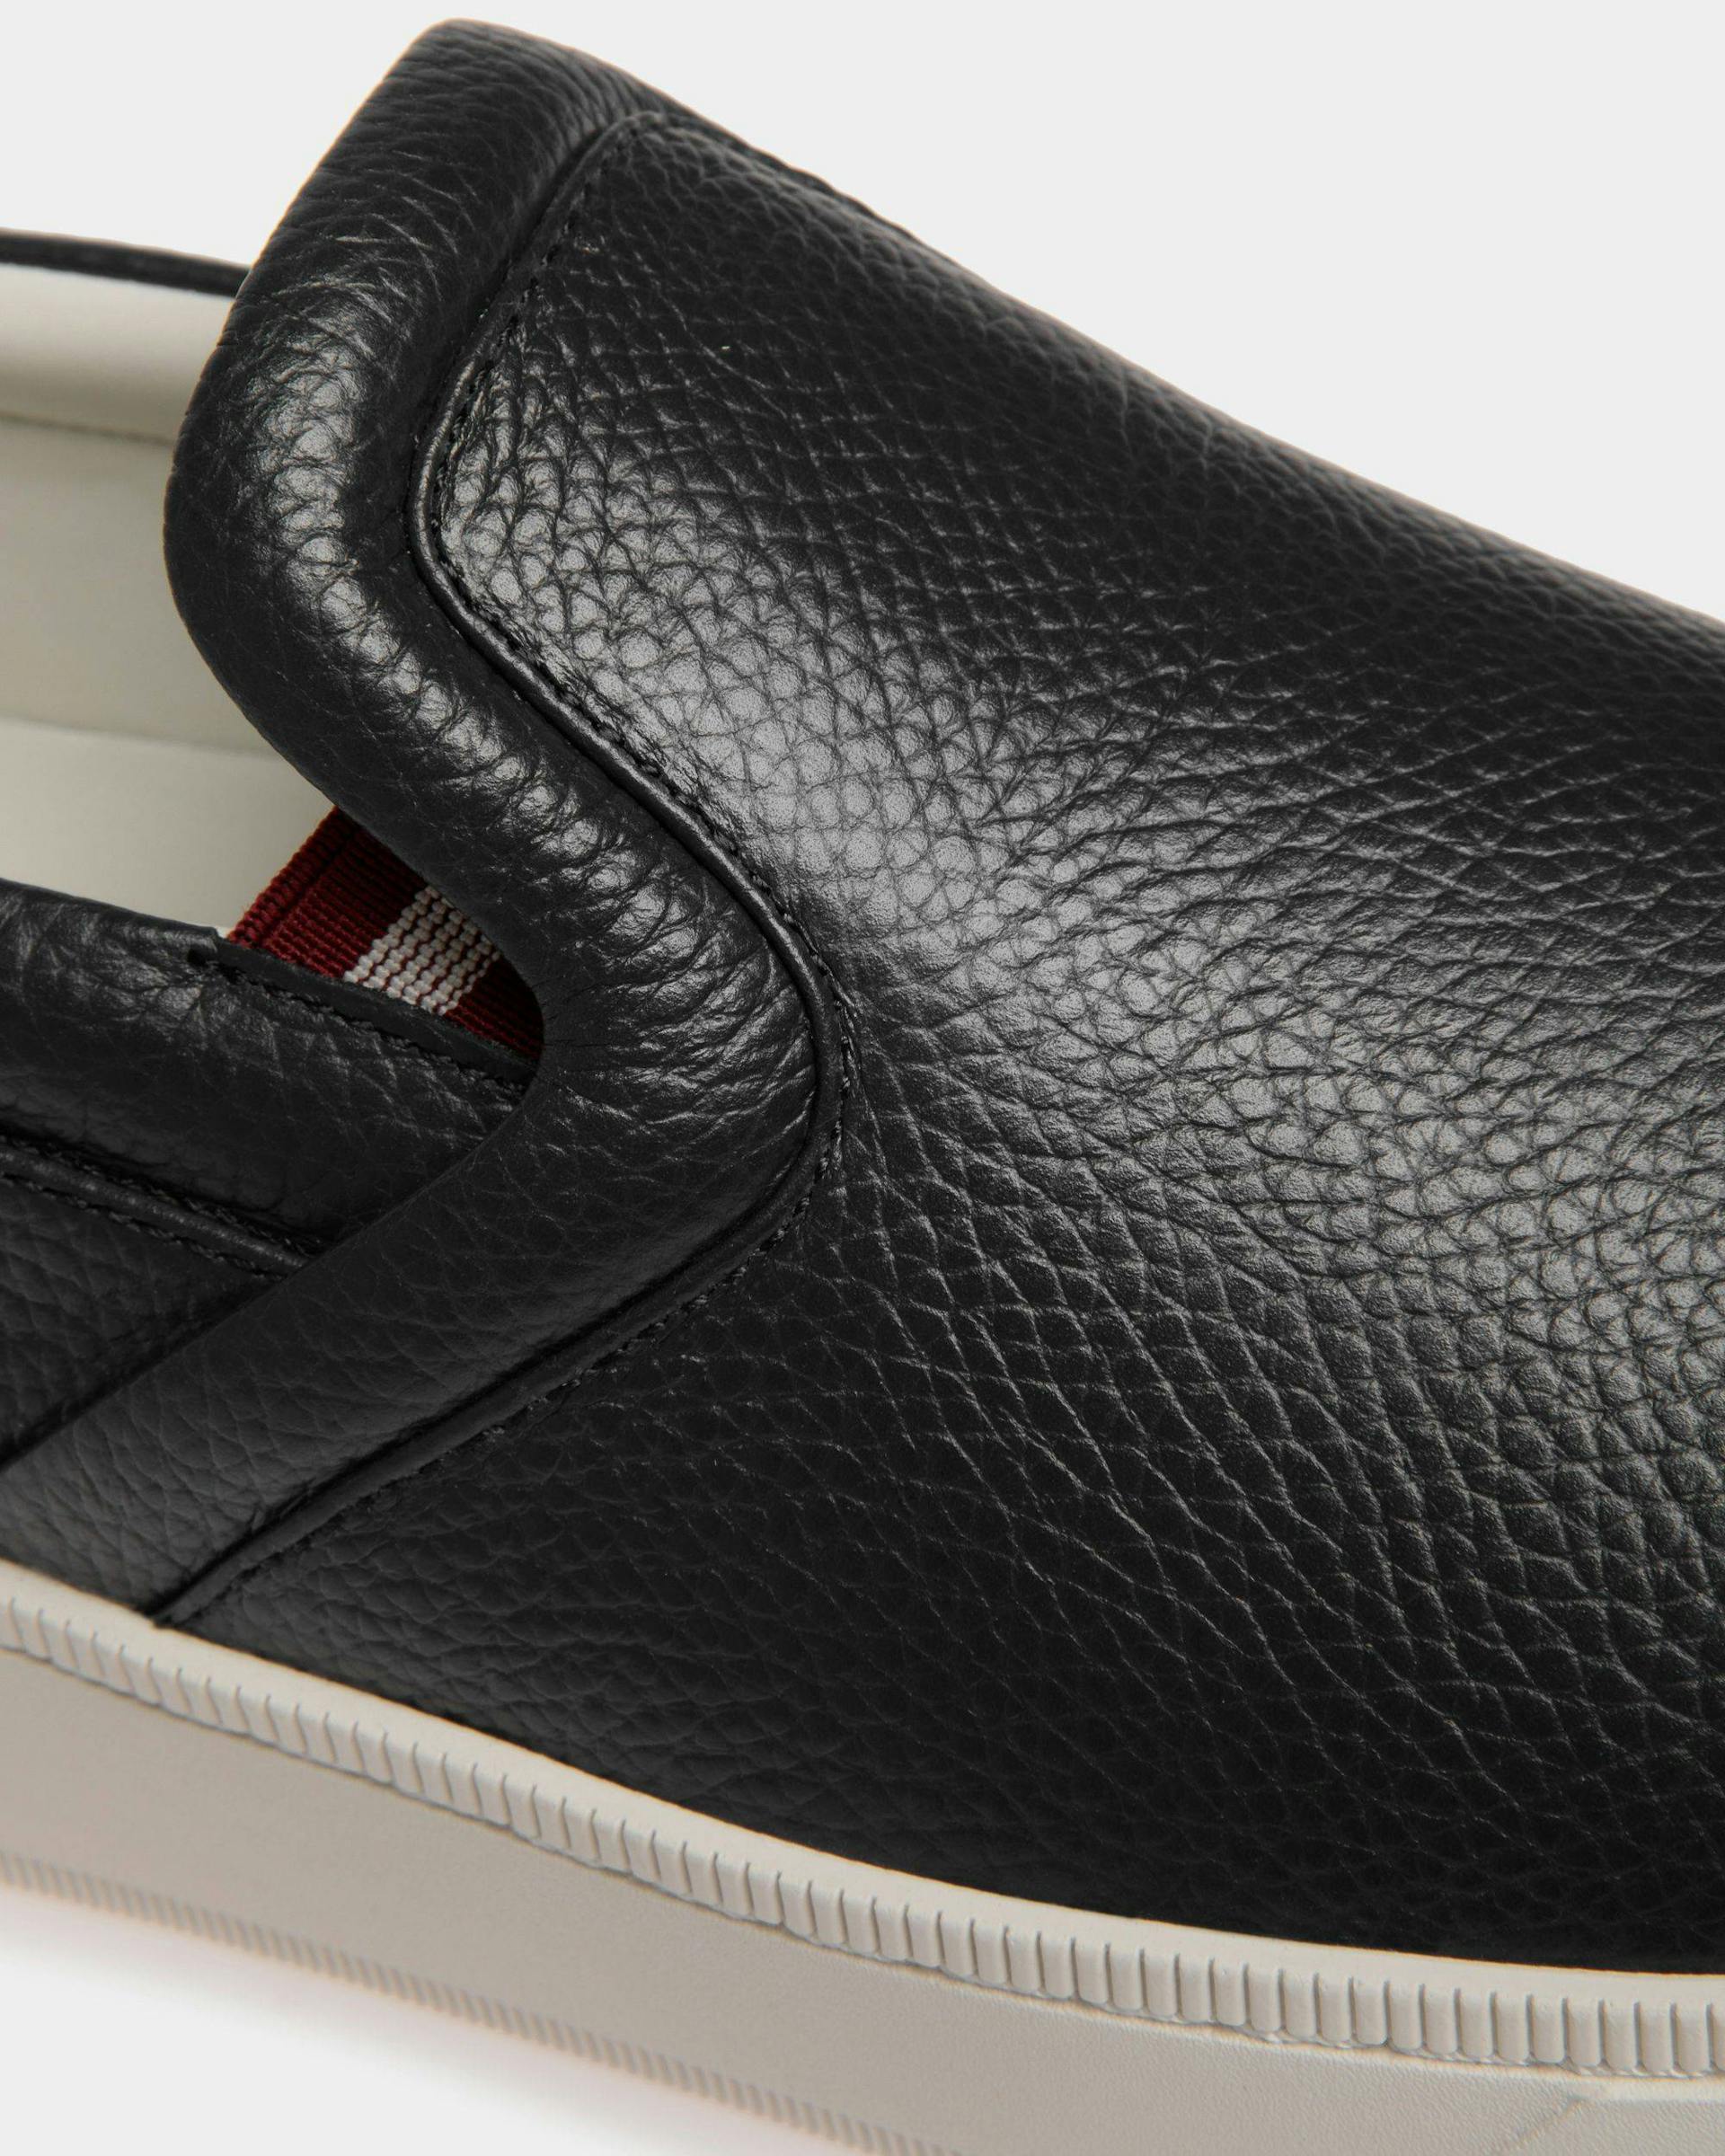 Men's Raise Slip-On Sneaker in Black Grained Leather | Bally | Still Life Detail